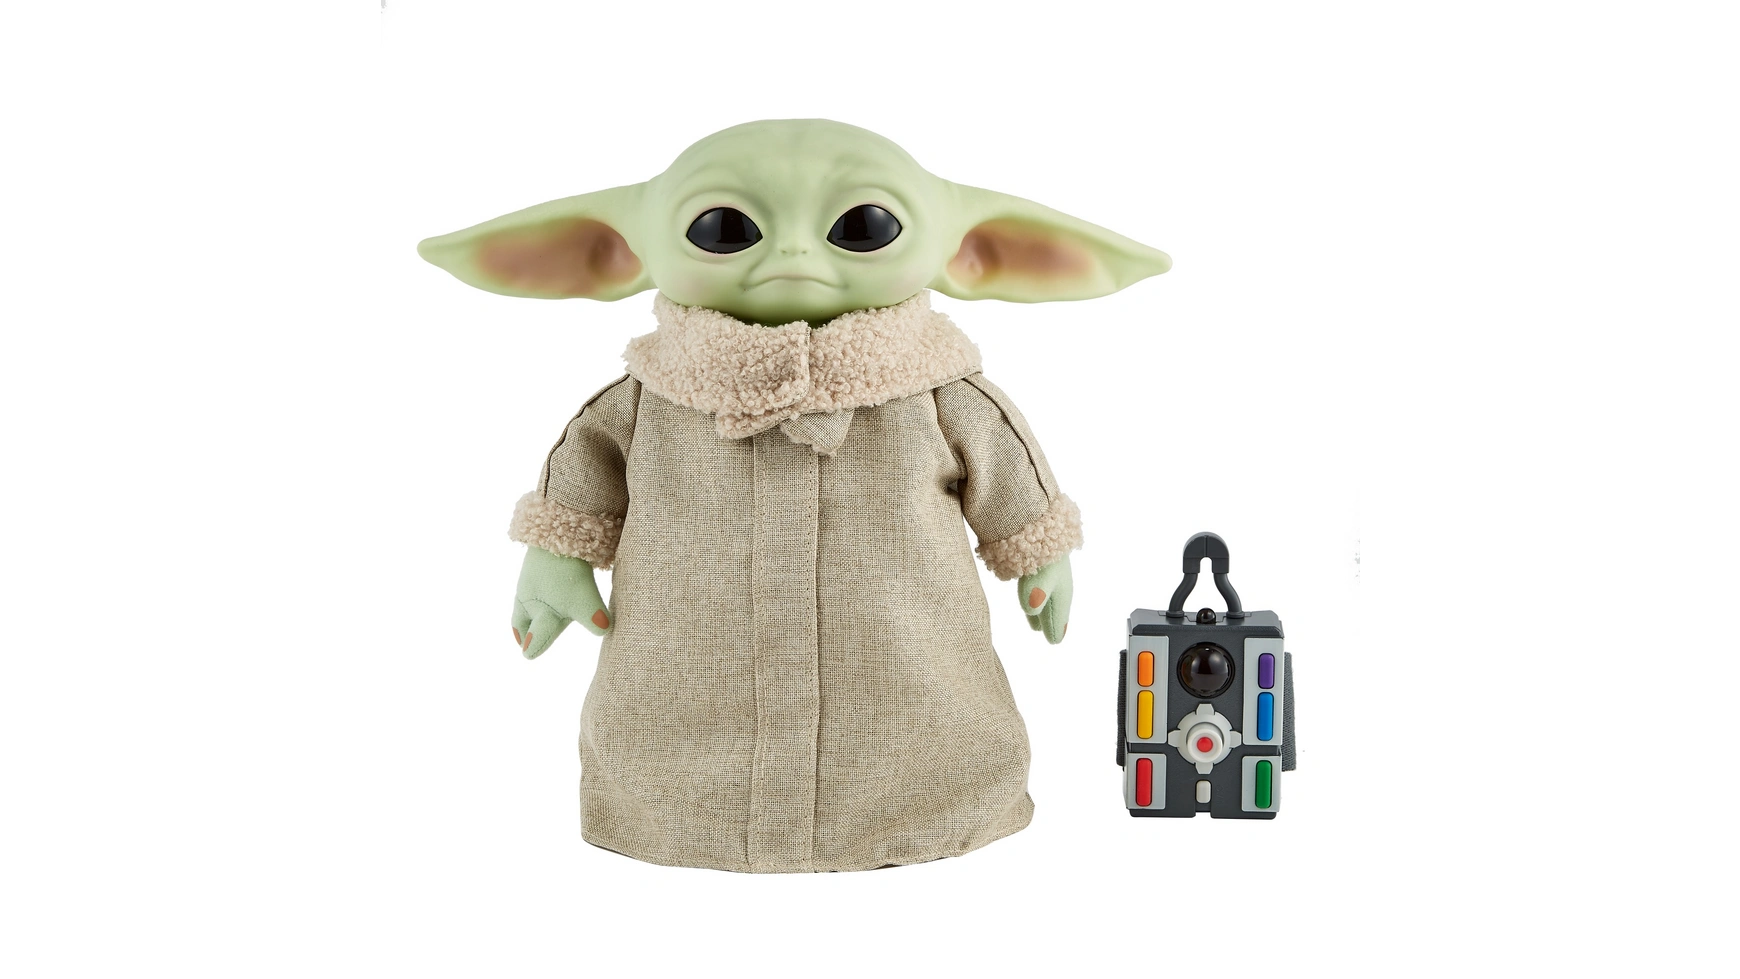 Функциональный плюш Disney Star Wars Mandalorian The Child Baby Yoda фигурка барбоскины малыш 5 см